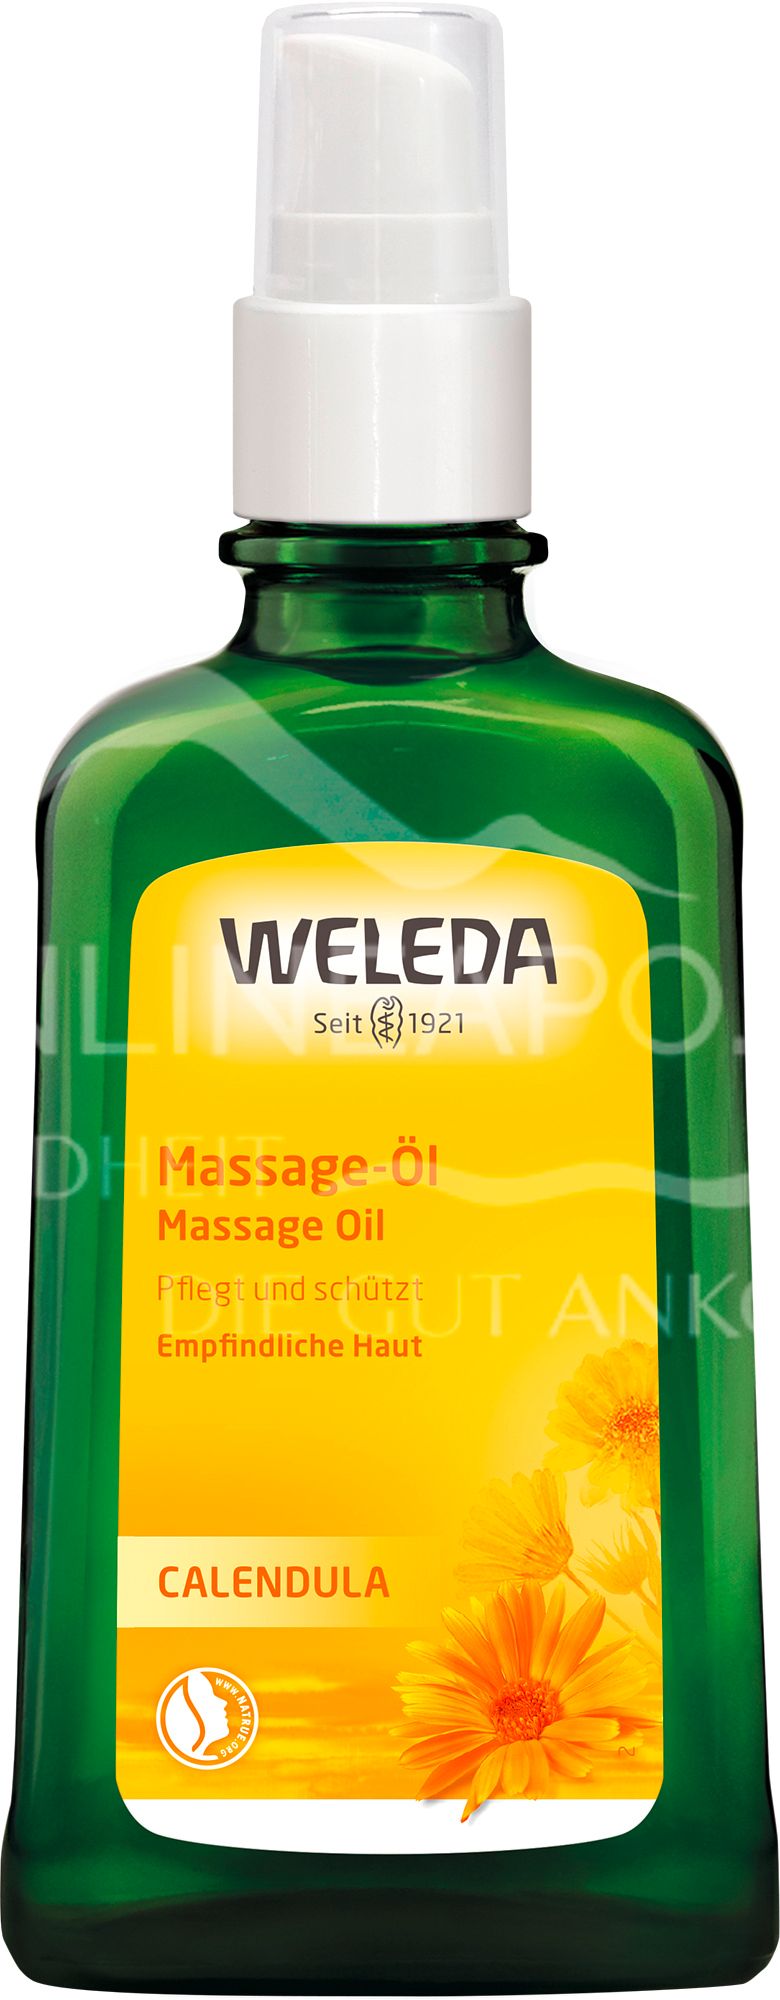 Weleda Calendula Massage-Öl